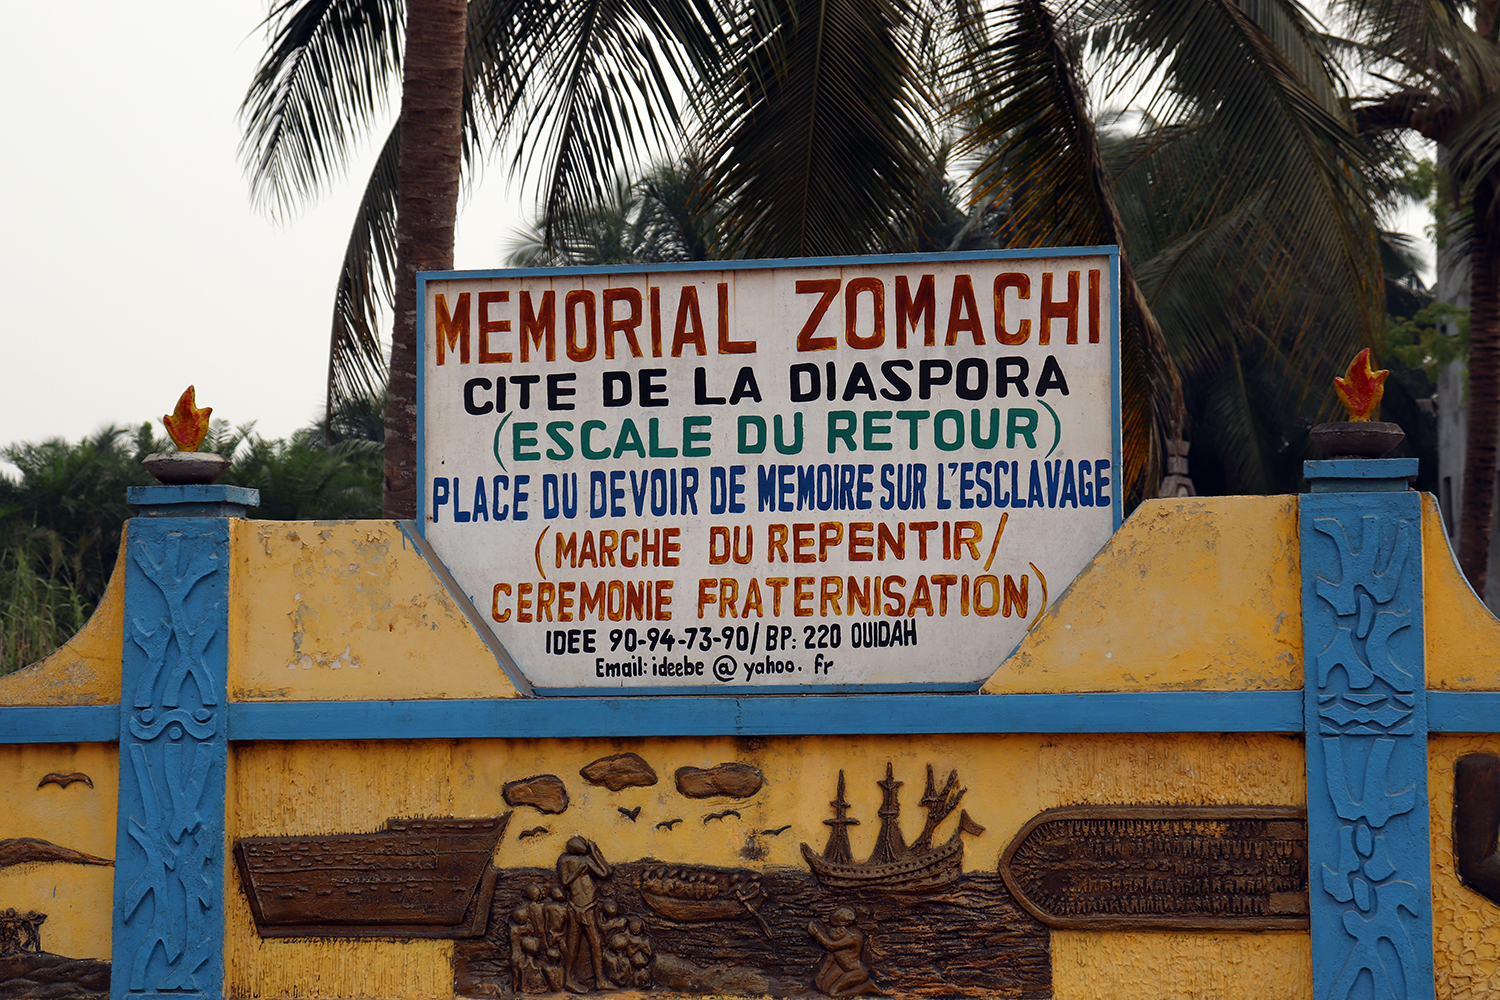 Le Mémorial Zomachi est dédié à la réconciliation entre les descendants des familles qui ont pratiqué la traite négrière et celles qui en ont été victimes.